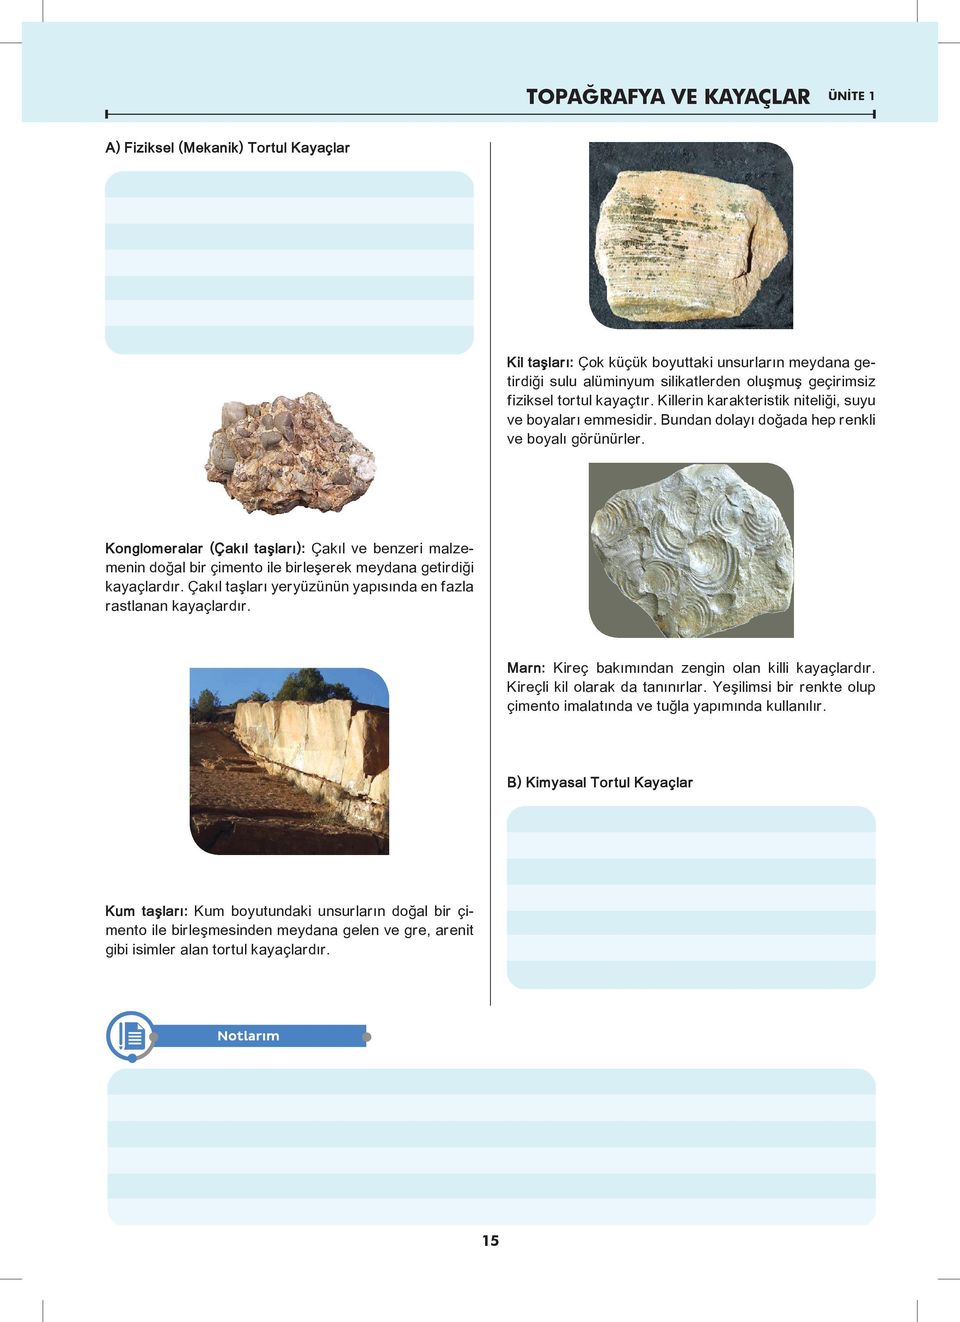 Konglomeralar (Çakıl taşları): Çakıl ve benzeri malzemenin doğal bir çimento ile birleşerek meydana getirdiği kayaçlardır. Çakıl taşları yeryüzünün yapısında en fazla rastlanan kayaçlardır.